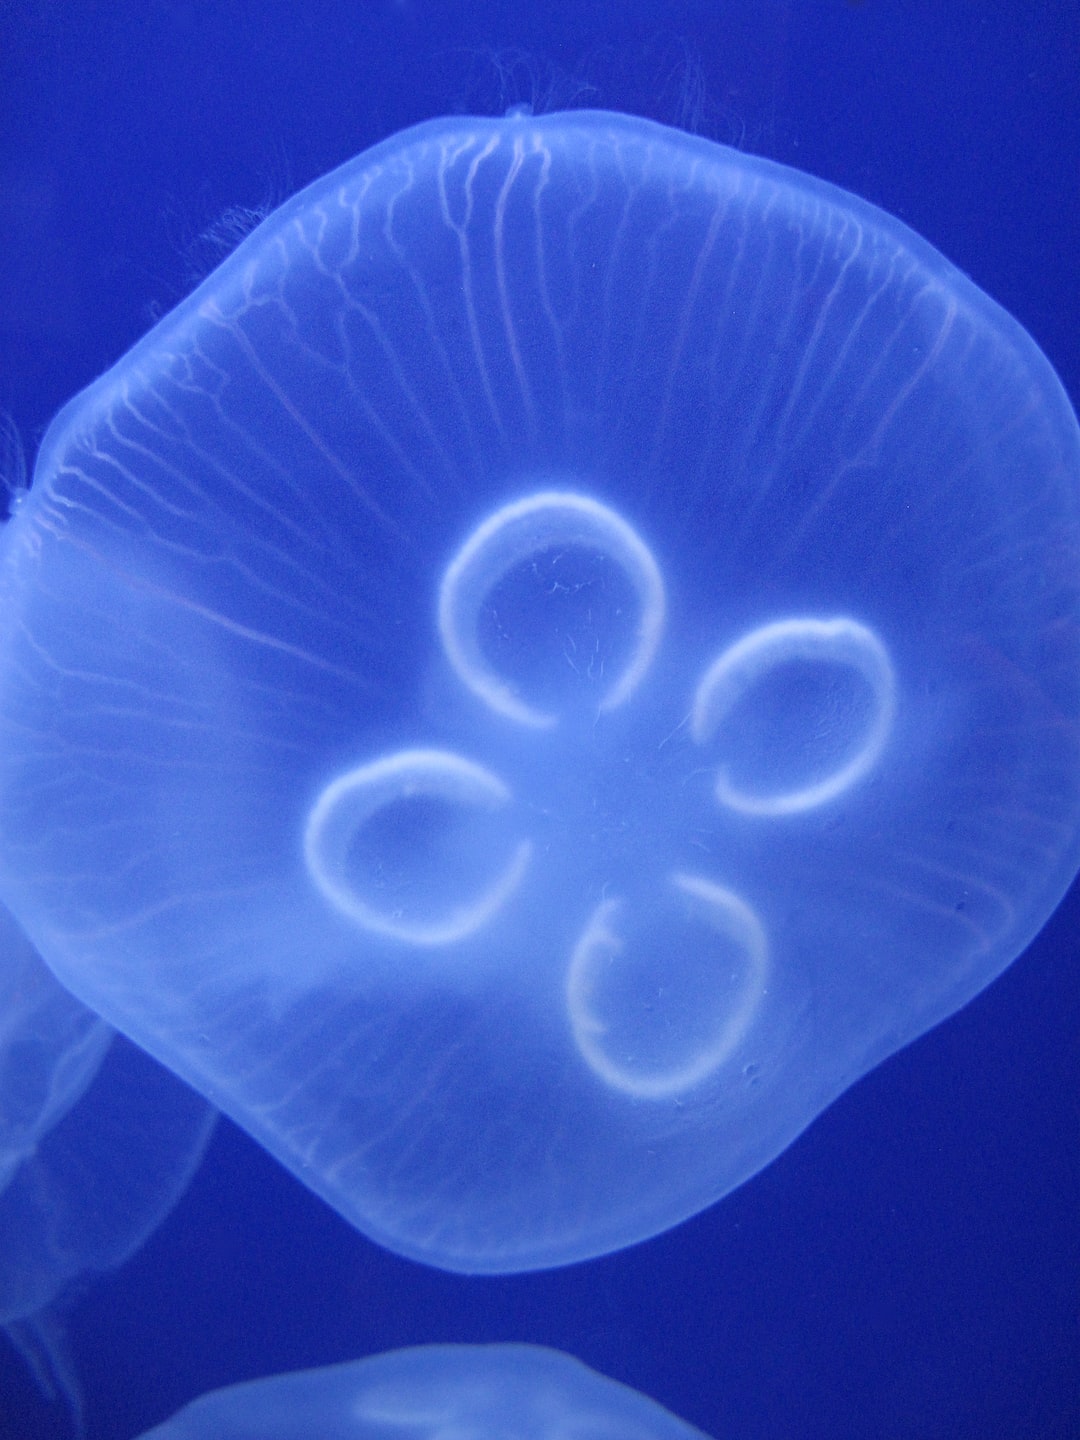 25 wichtige Fragen zu Meerwasser Aquarium Korallen